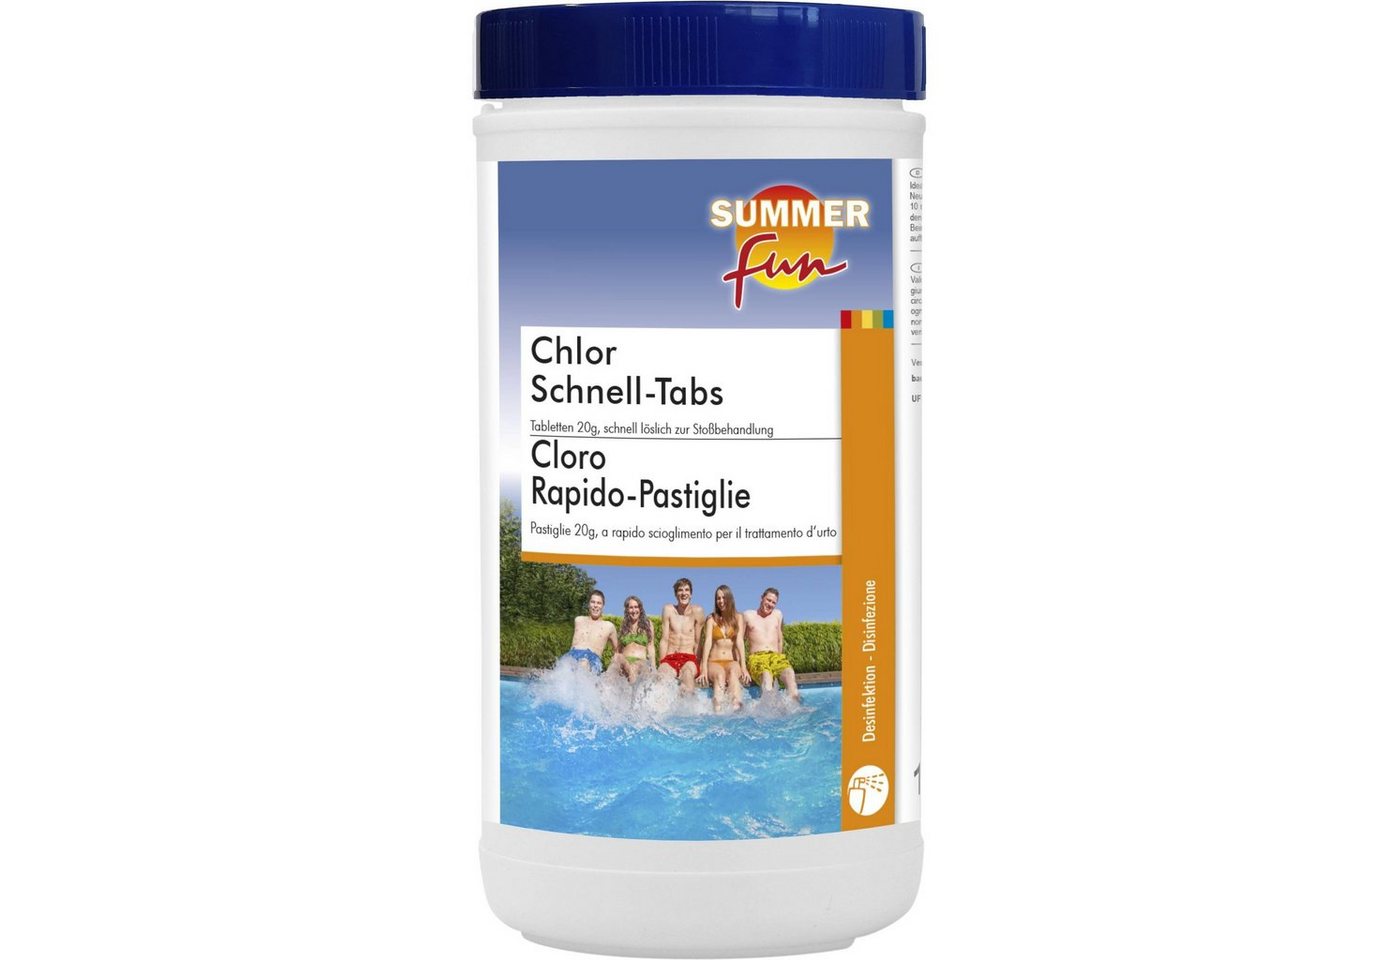 SUMMER FUN Poolpflege Summer Fun - Chlor Schnell-Tabs - 20g Tabletten, 1 von SUMMER FUN